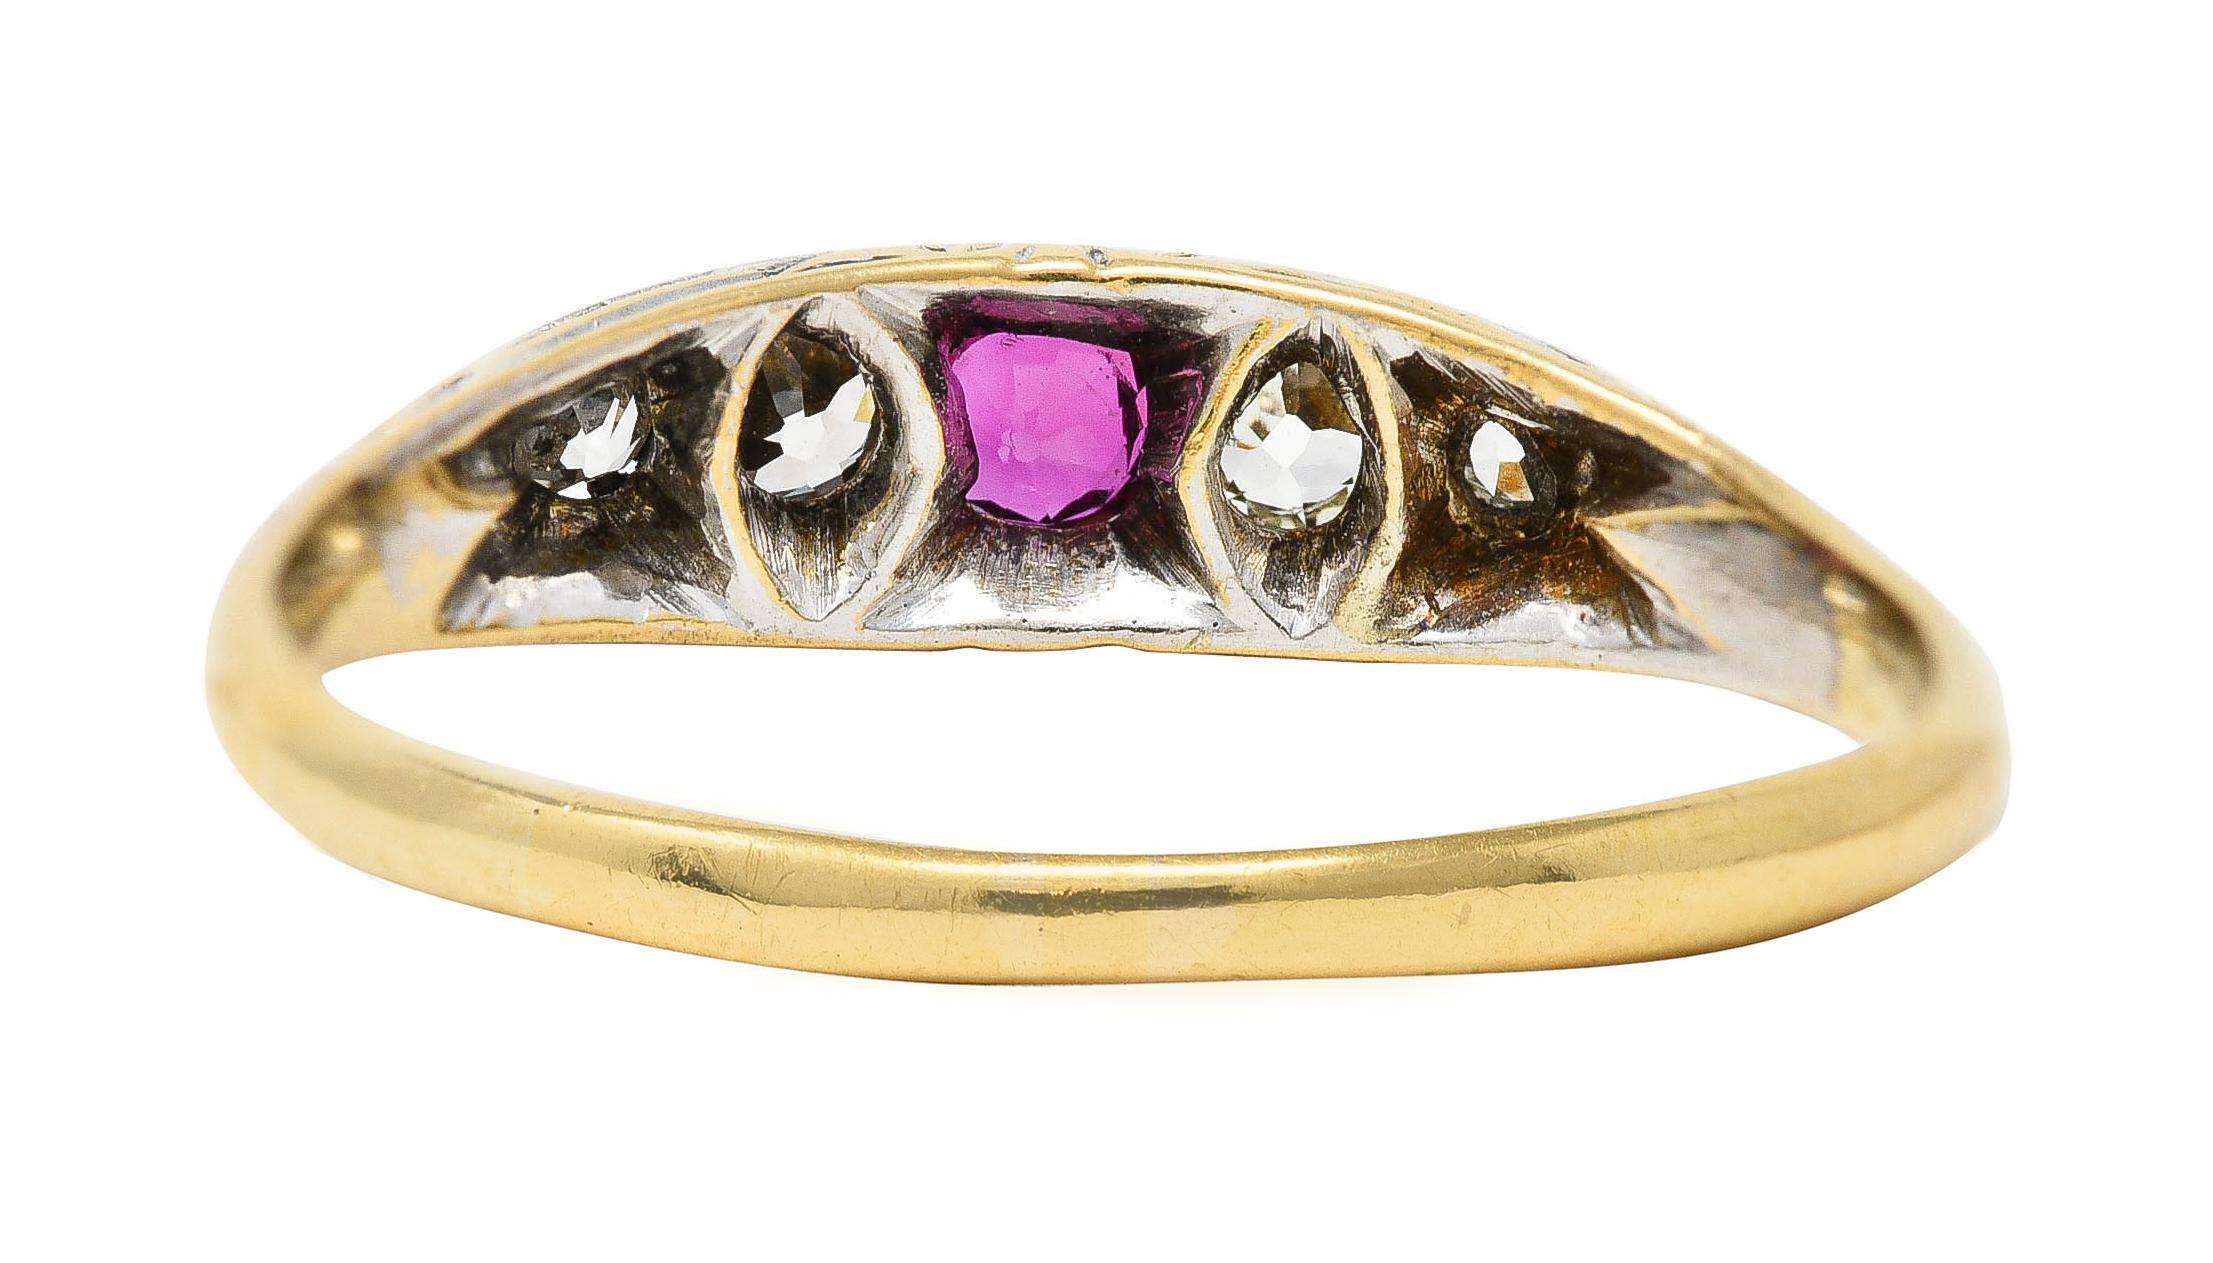 Round Cut Edwardian Ruby Old European Cut Diamond Platinum-Topped 18 Karat Gold Band Ring